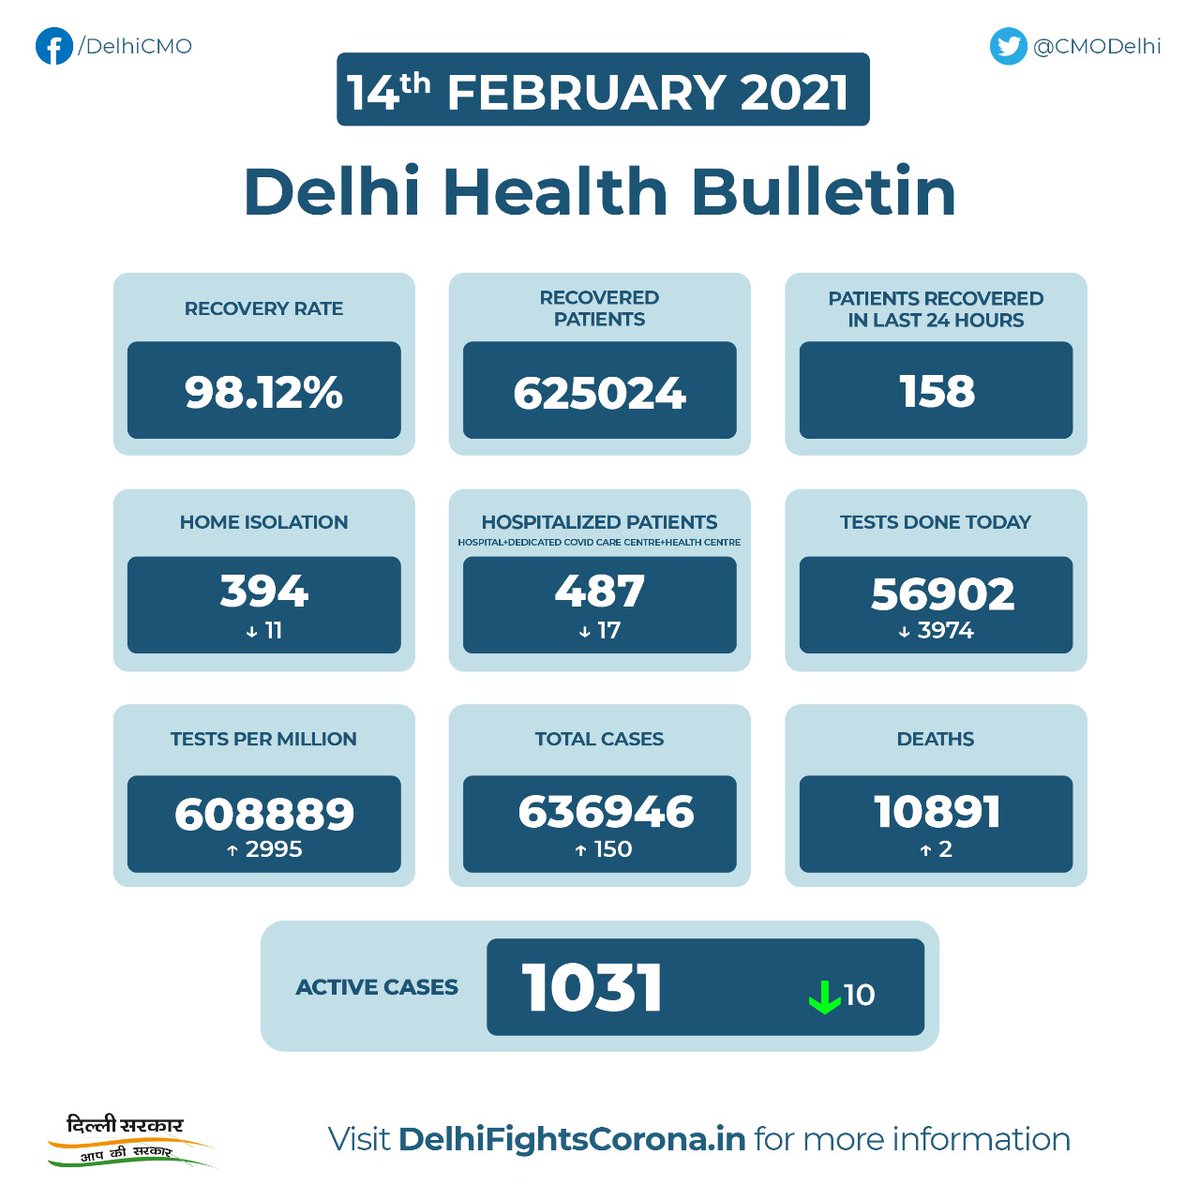 Cmo Delhi Delhi Health Bulletin 14th February 21 Delhifightscorona